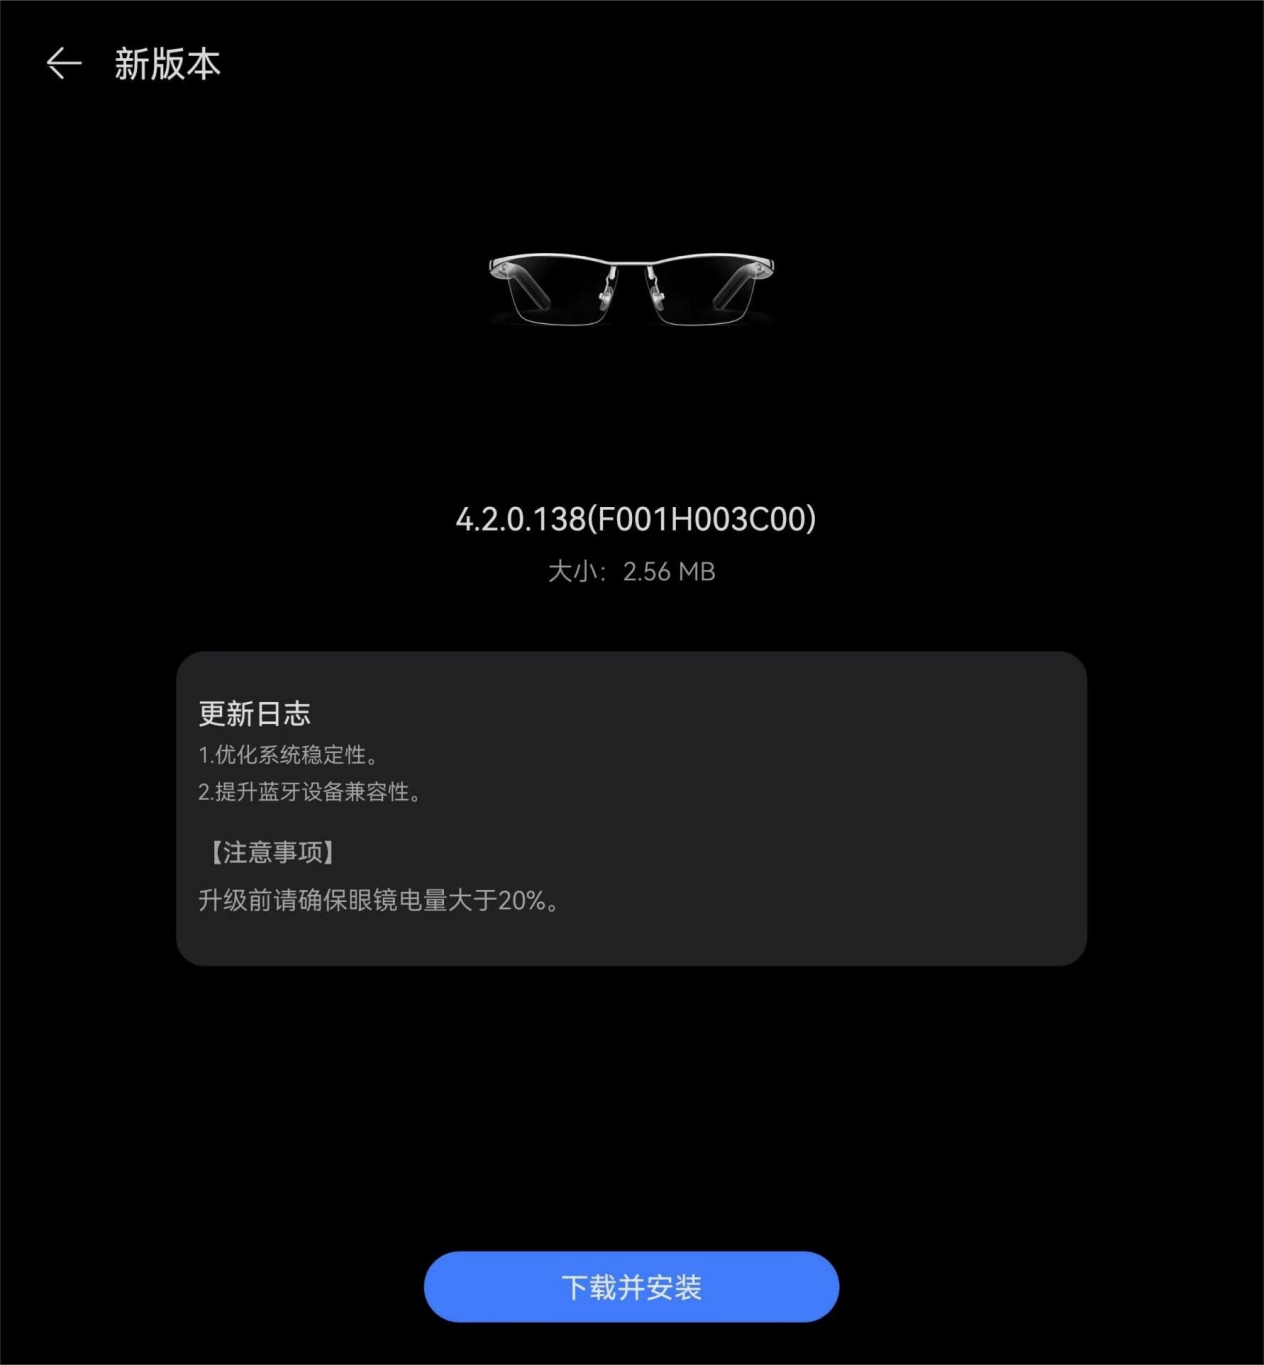 华为智能眼镜 2 更新鸿蒙 HarmonyOS 4.2：支持 iOS 颈椎健康